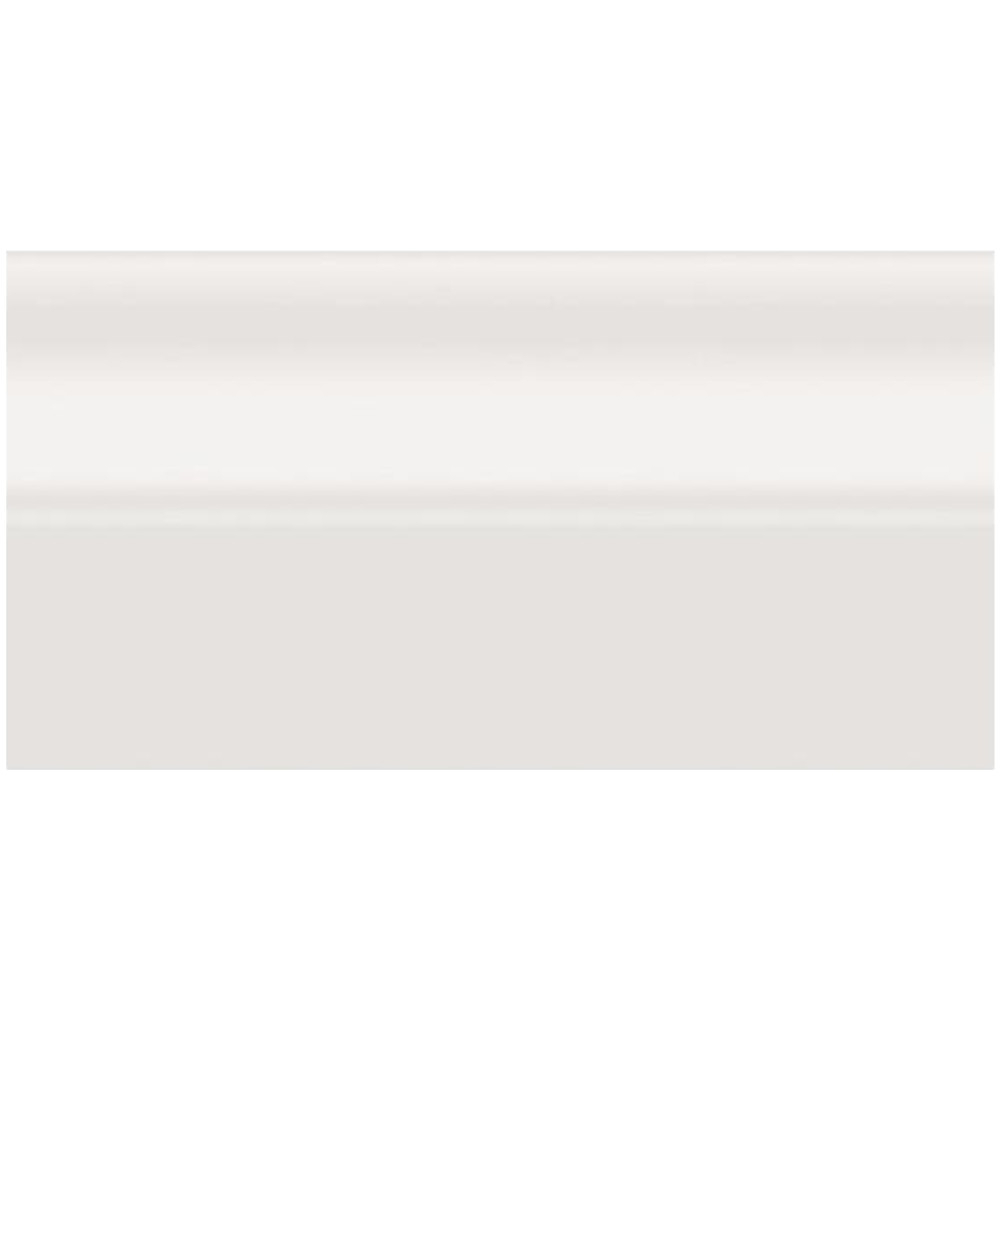 Rodapie blanco FB2 200x10 cm — Azulejossola